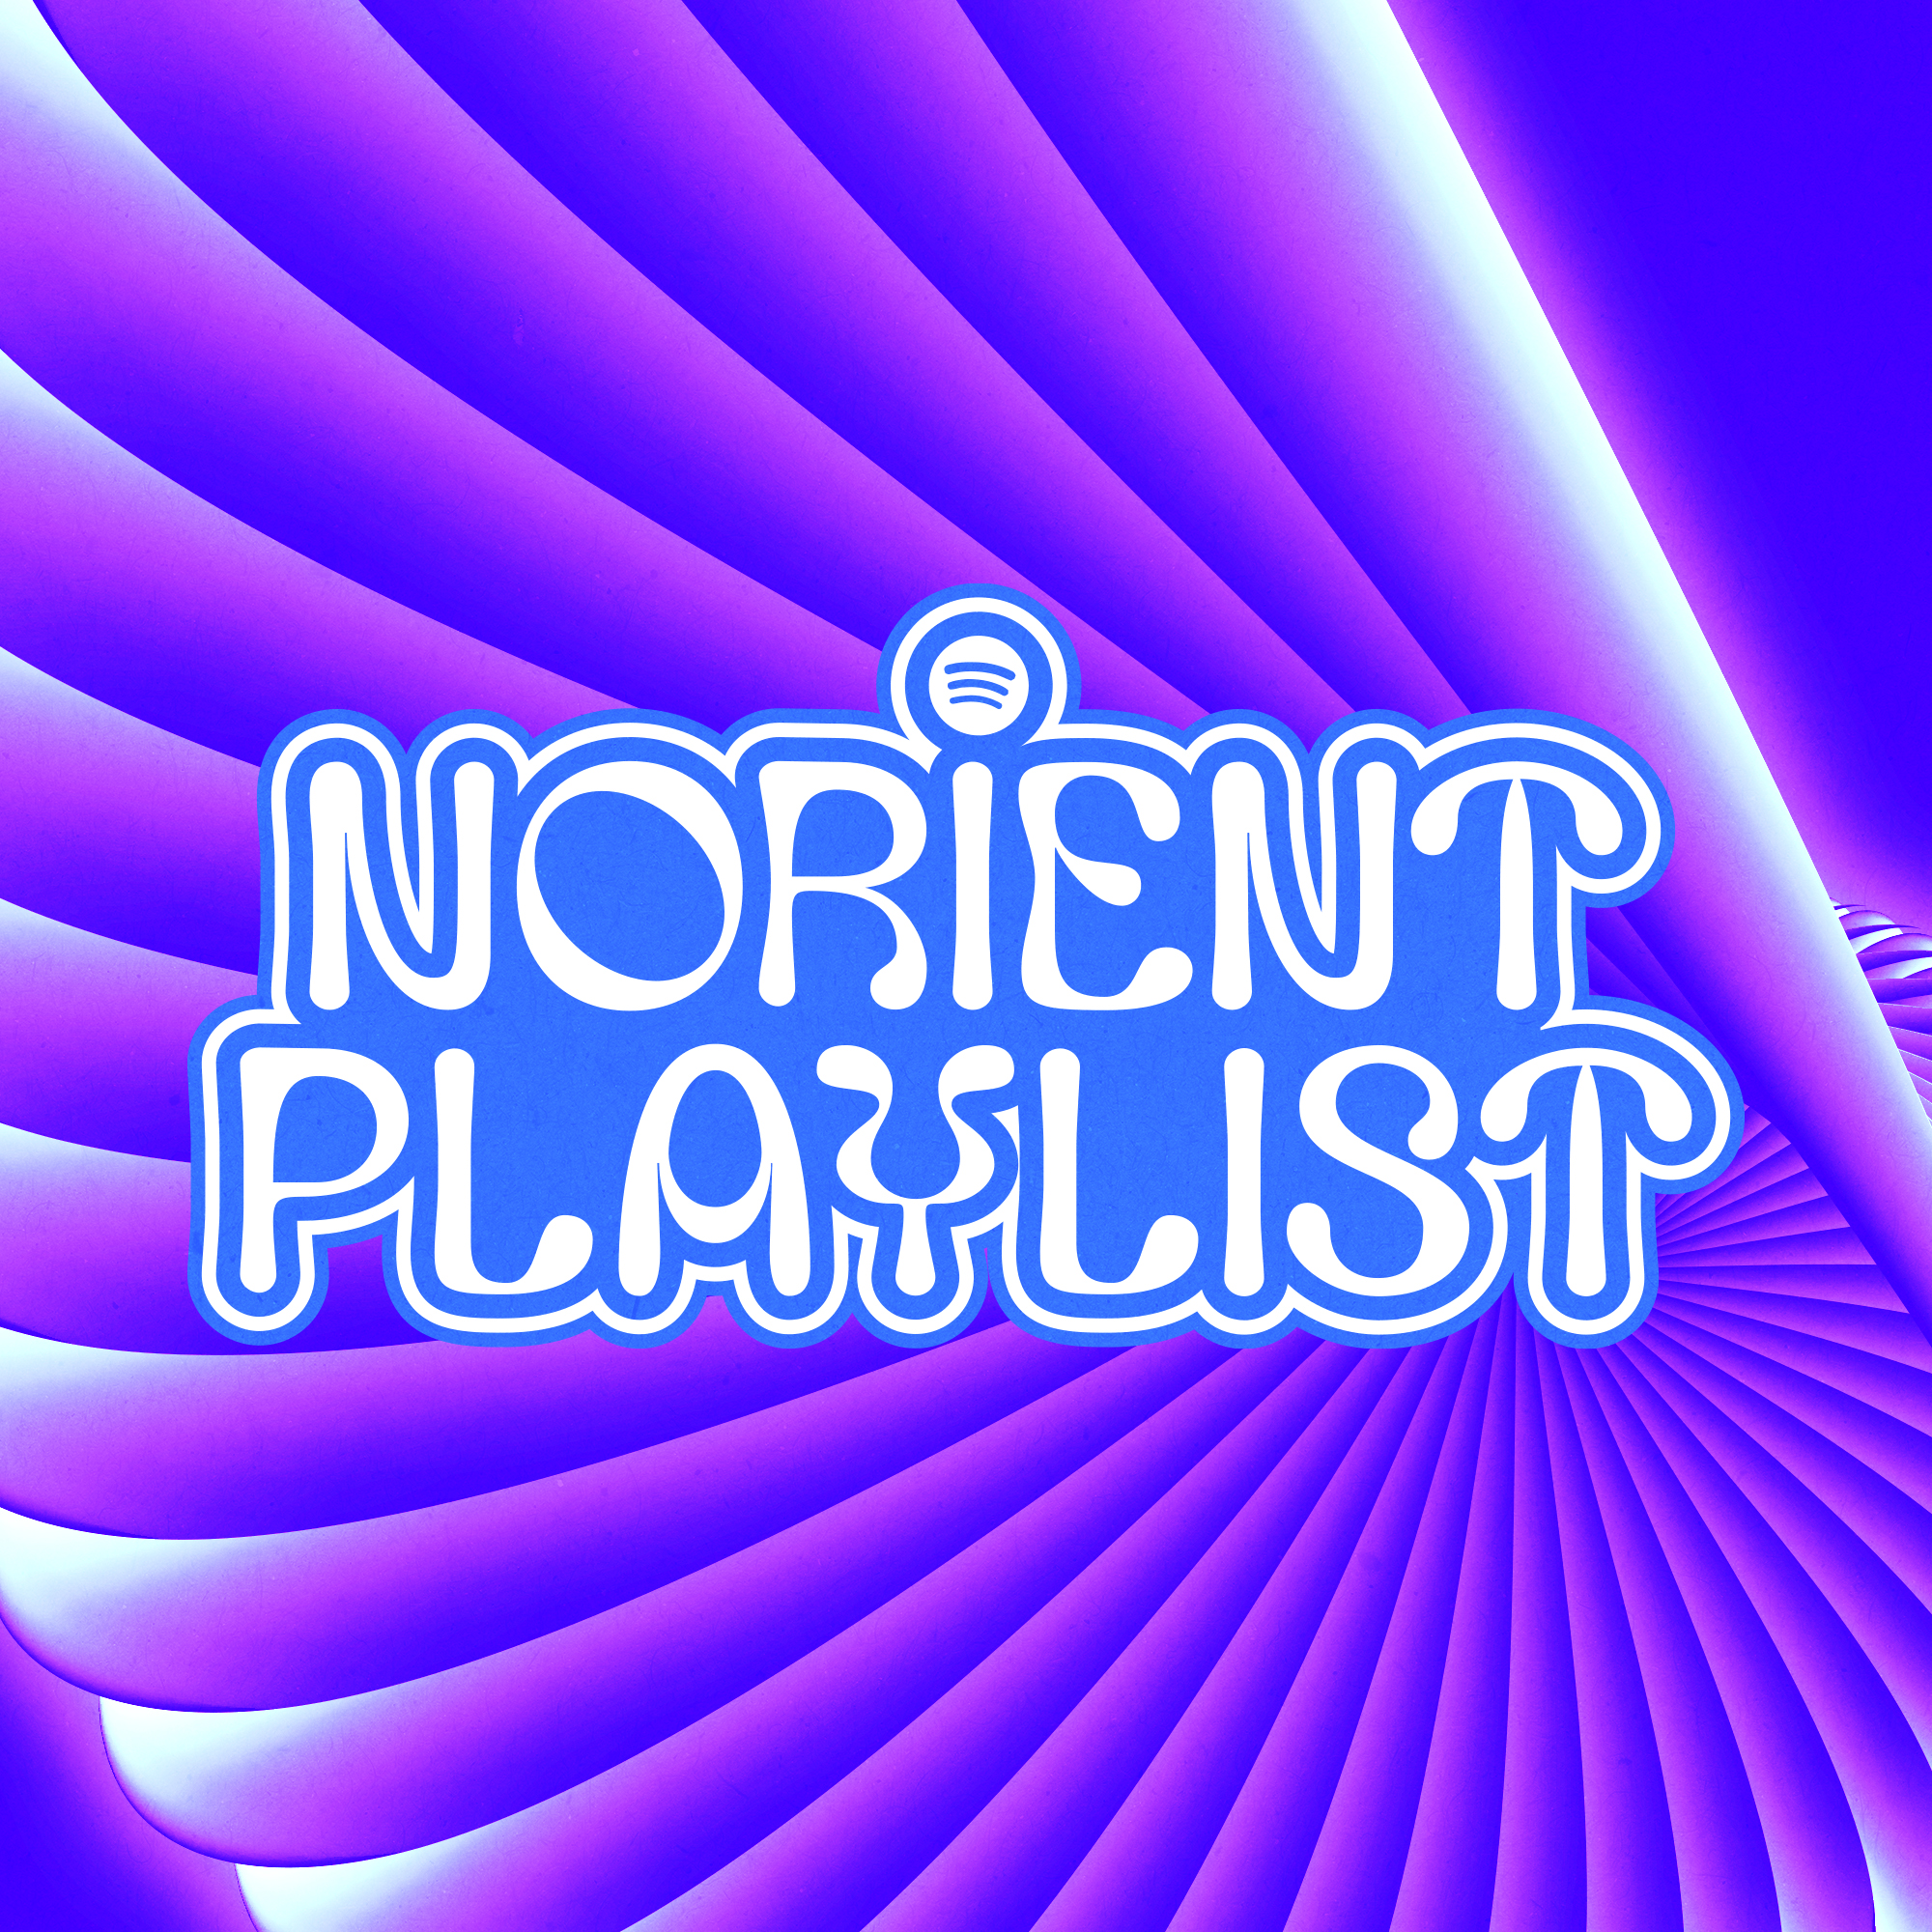 Norient Playlist (artwork by Sergio Salazar).